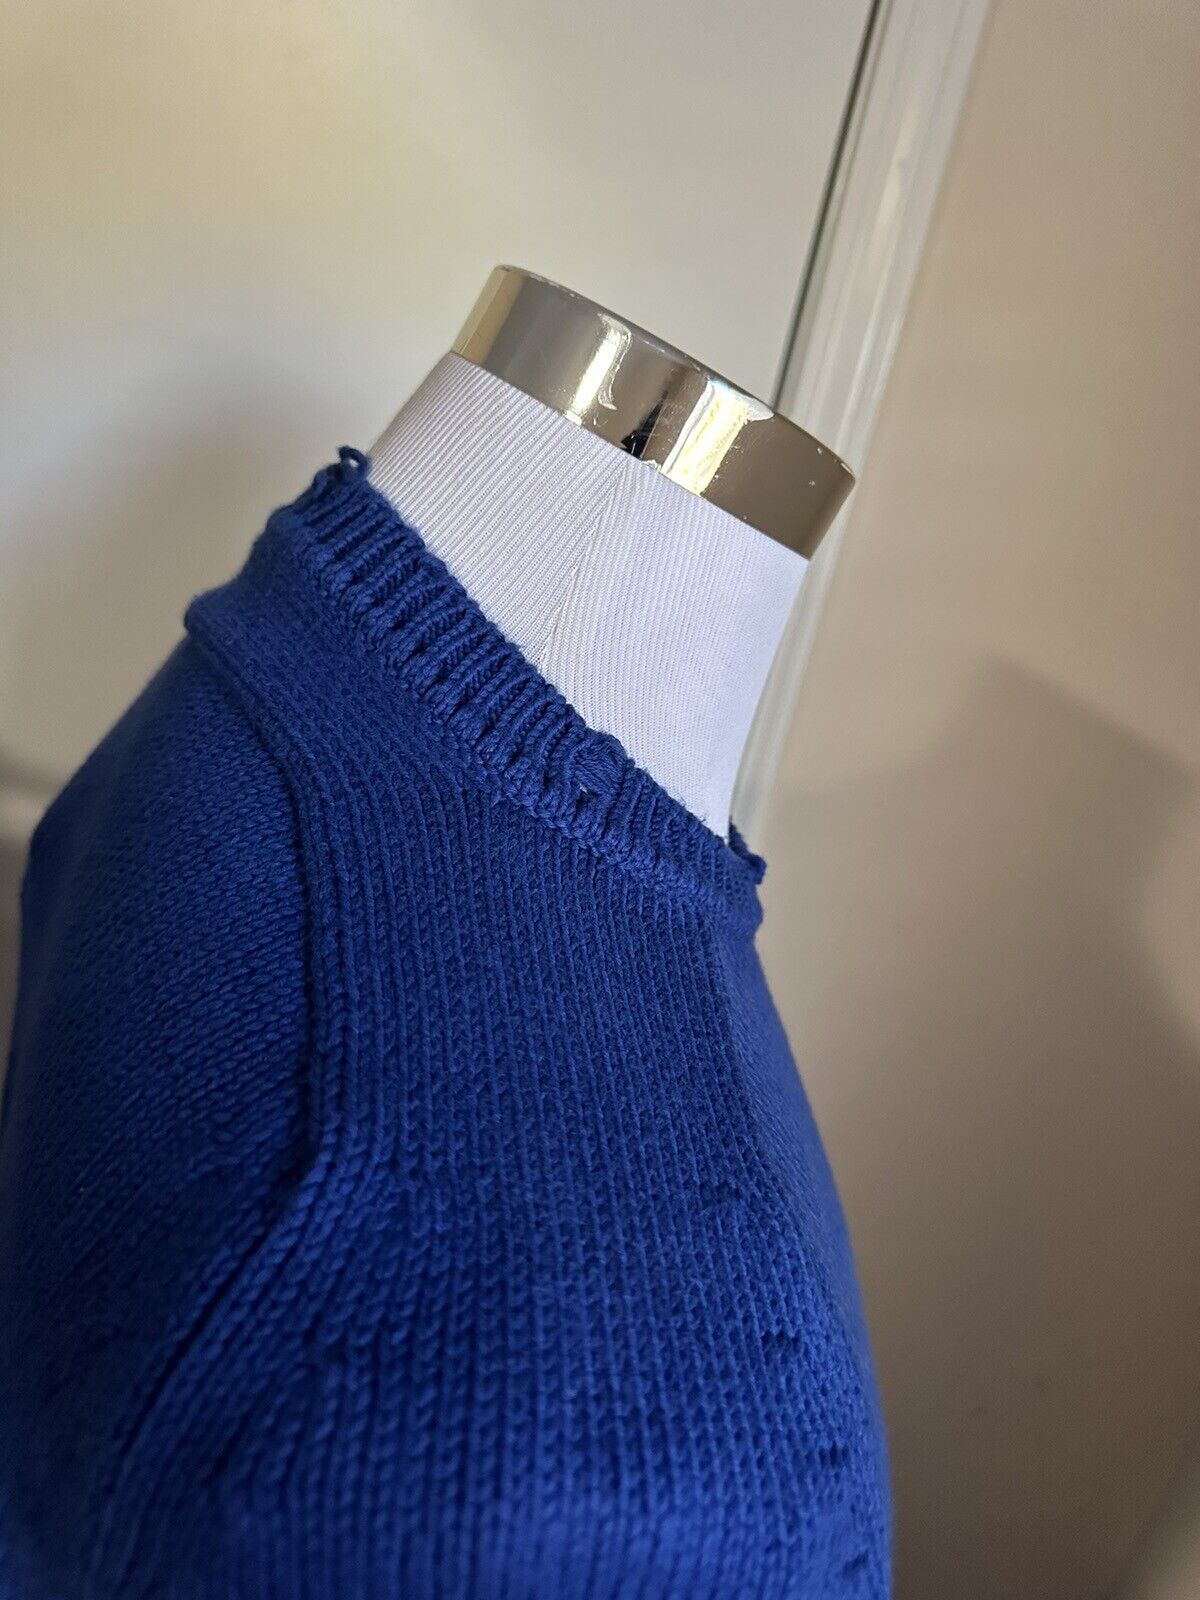 Neu mit Etikett: 890 $ Saint Laurent Herrenpullover mit Rundhalsausschnitt, Blau, Größe L, Italien